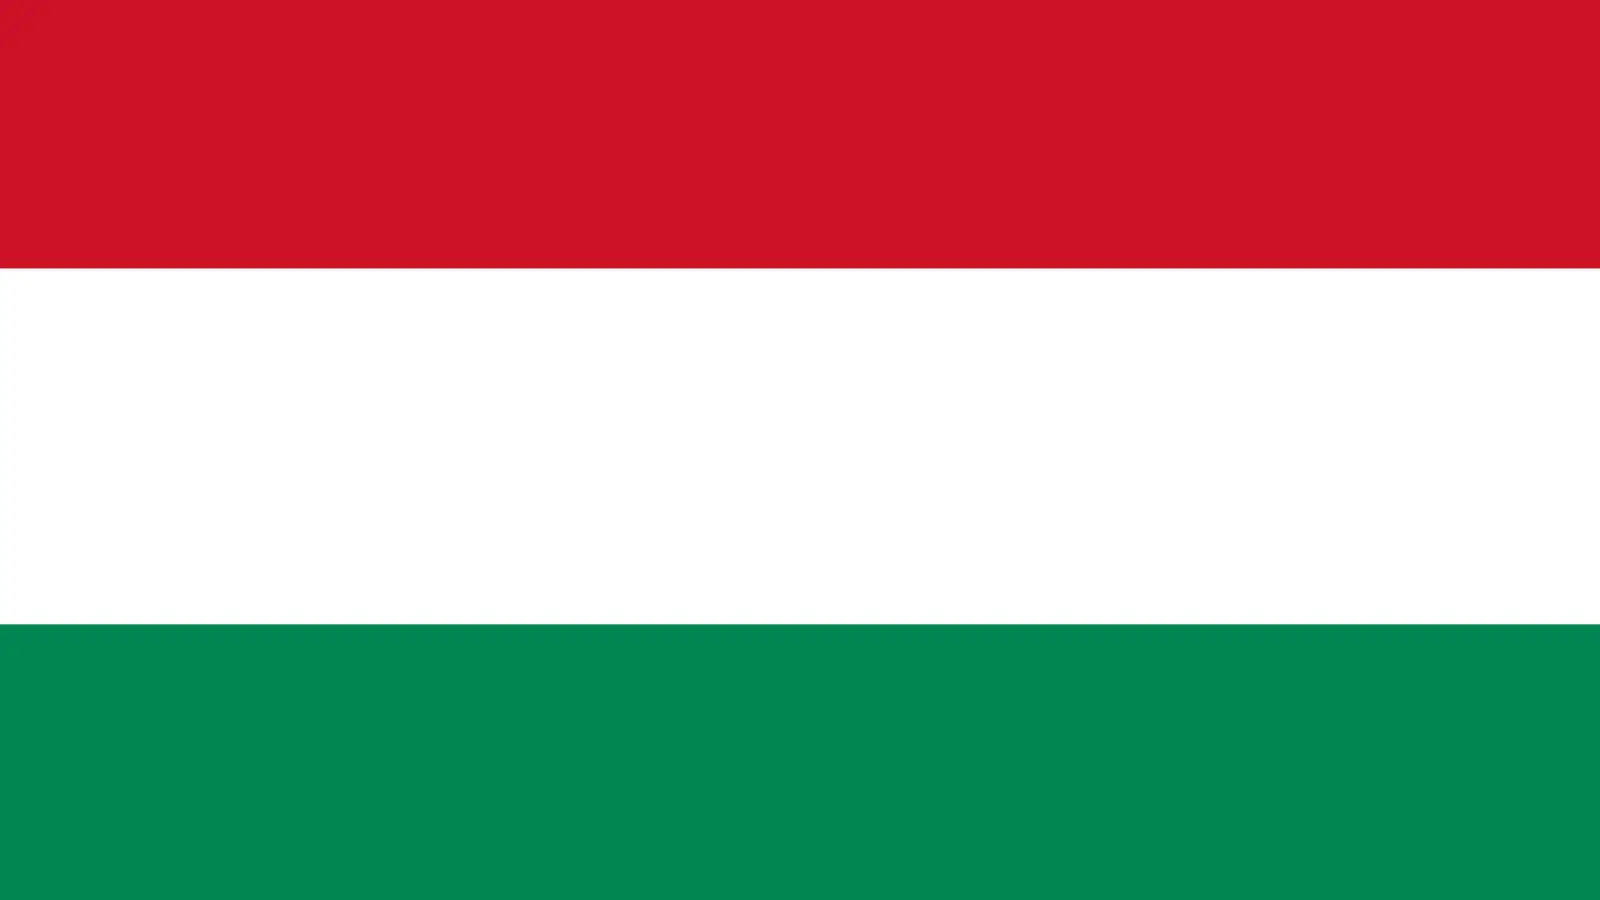 Węgry sprzeciwiają się ważnej decyzji, której zażądano w UE